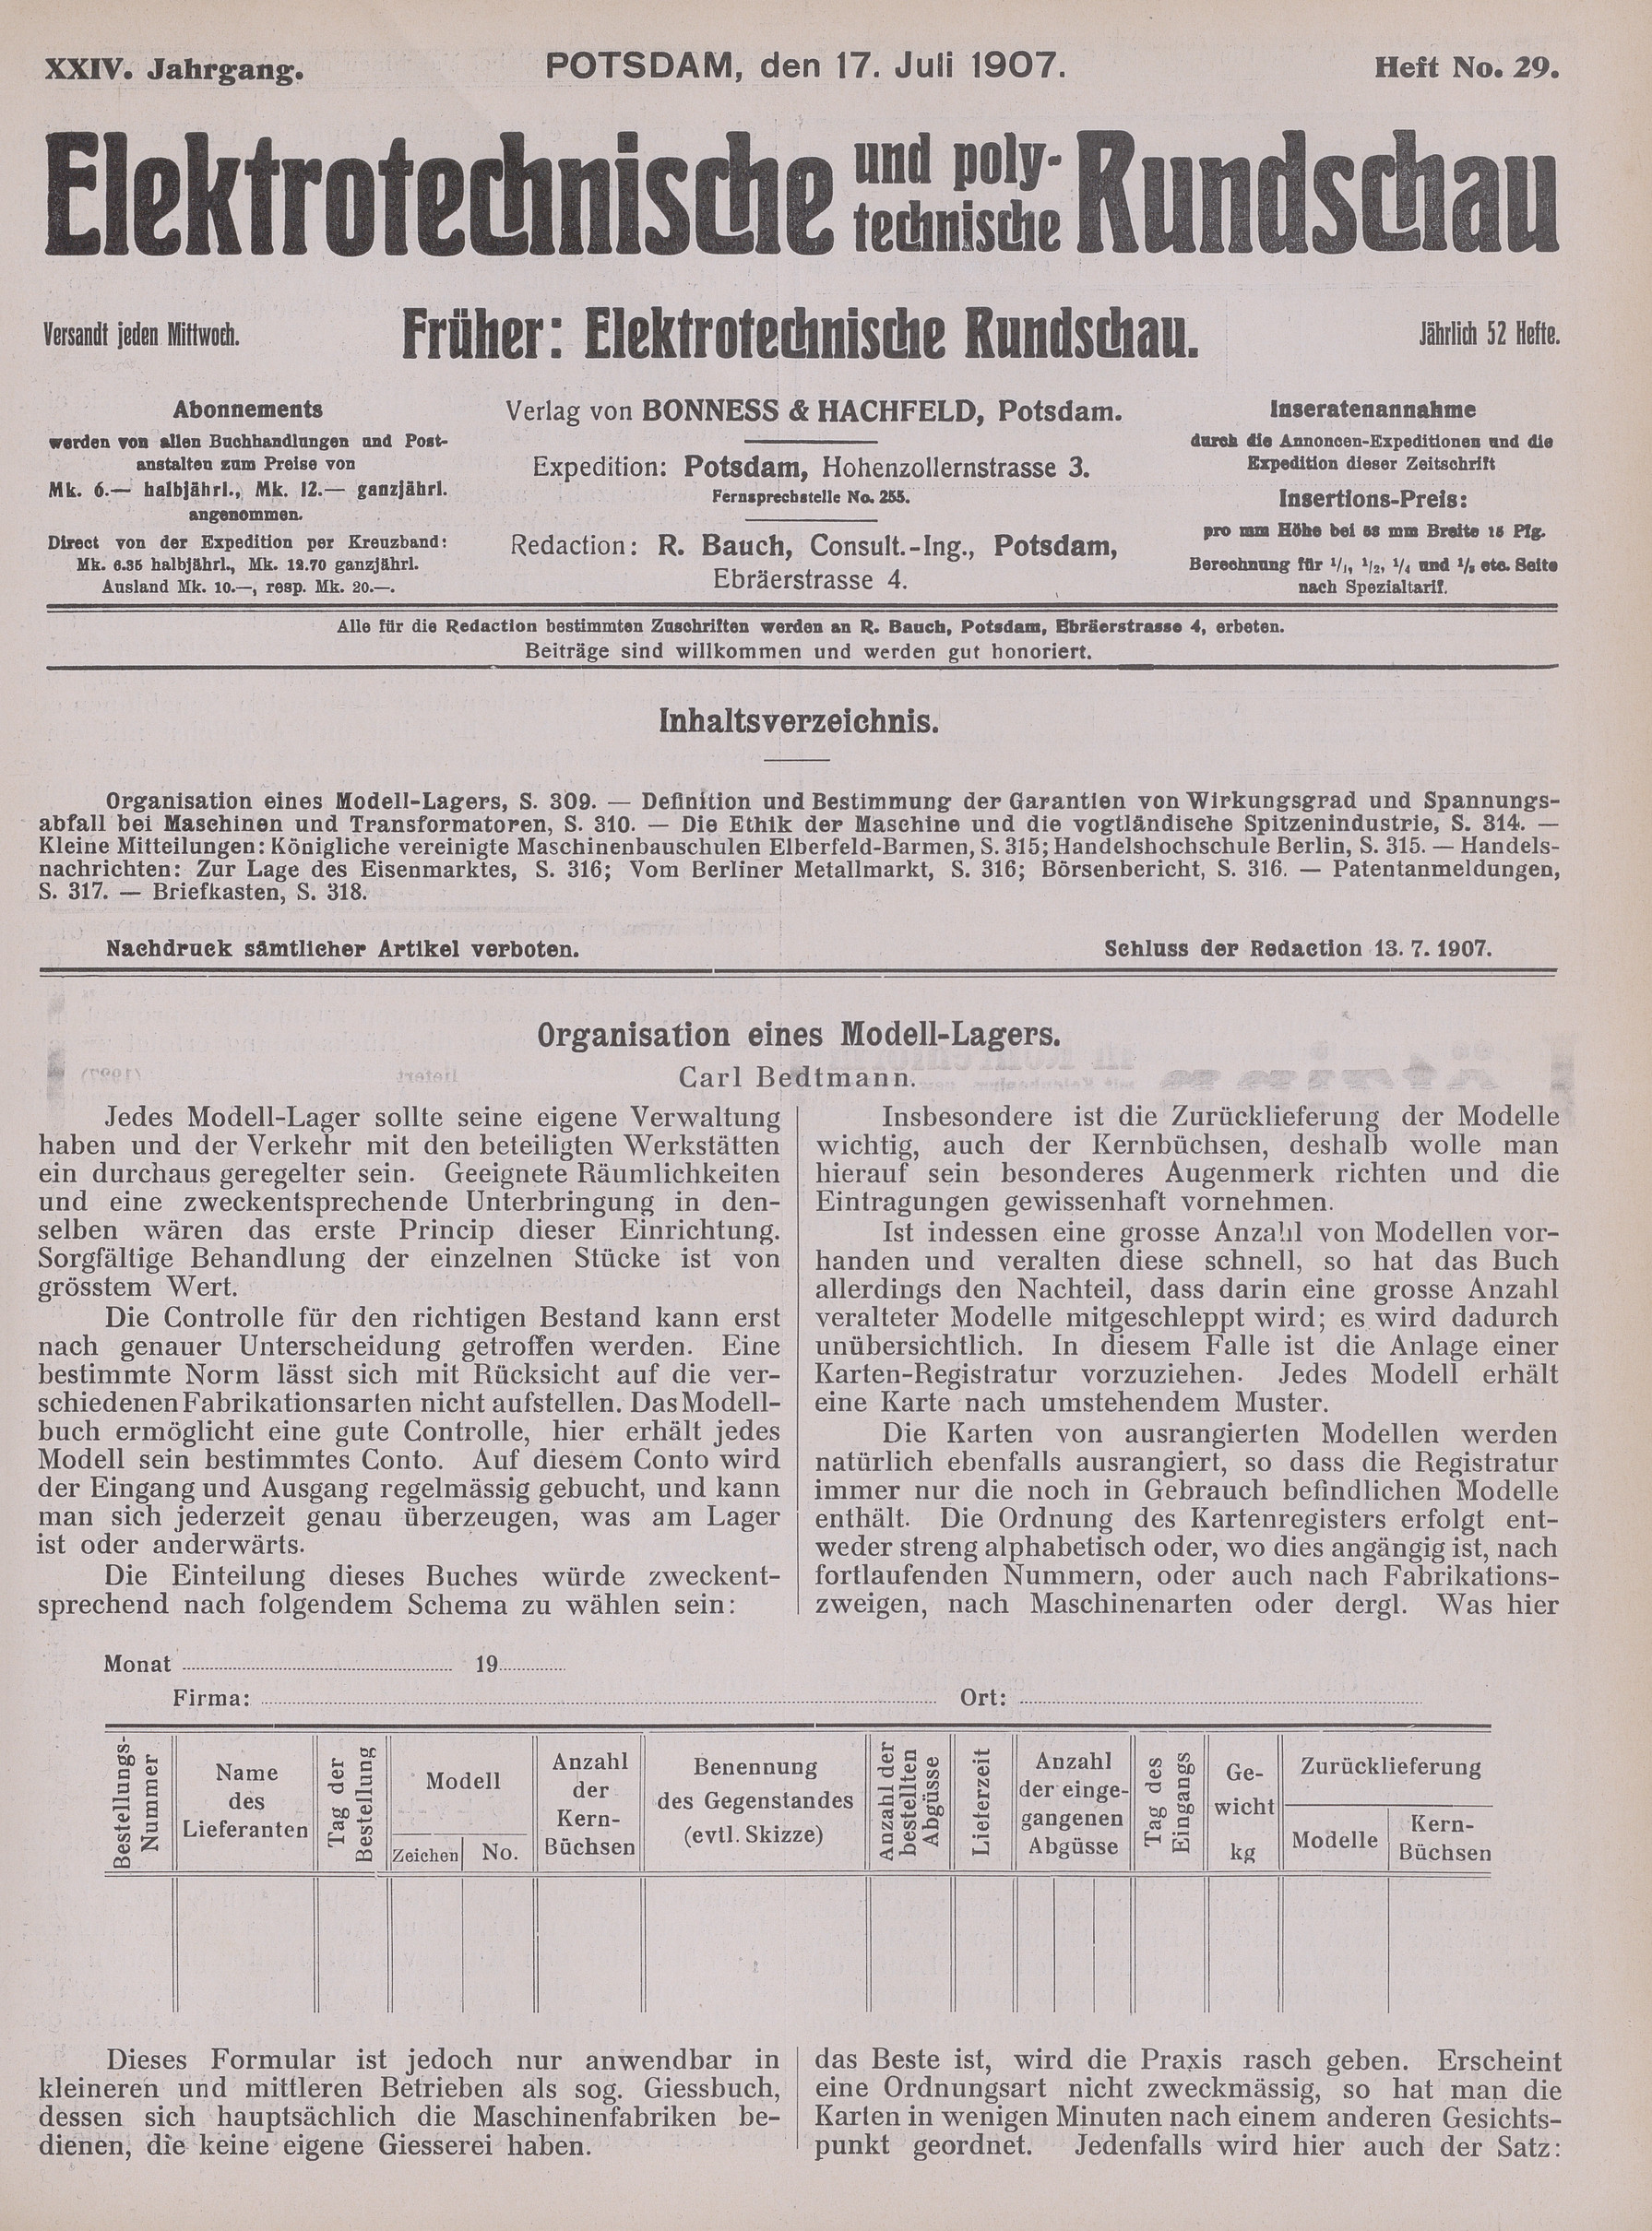 Elektrotechnische und polytechnische Rundschau, XXIV. Jahrgang, Heft No. 29